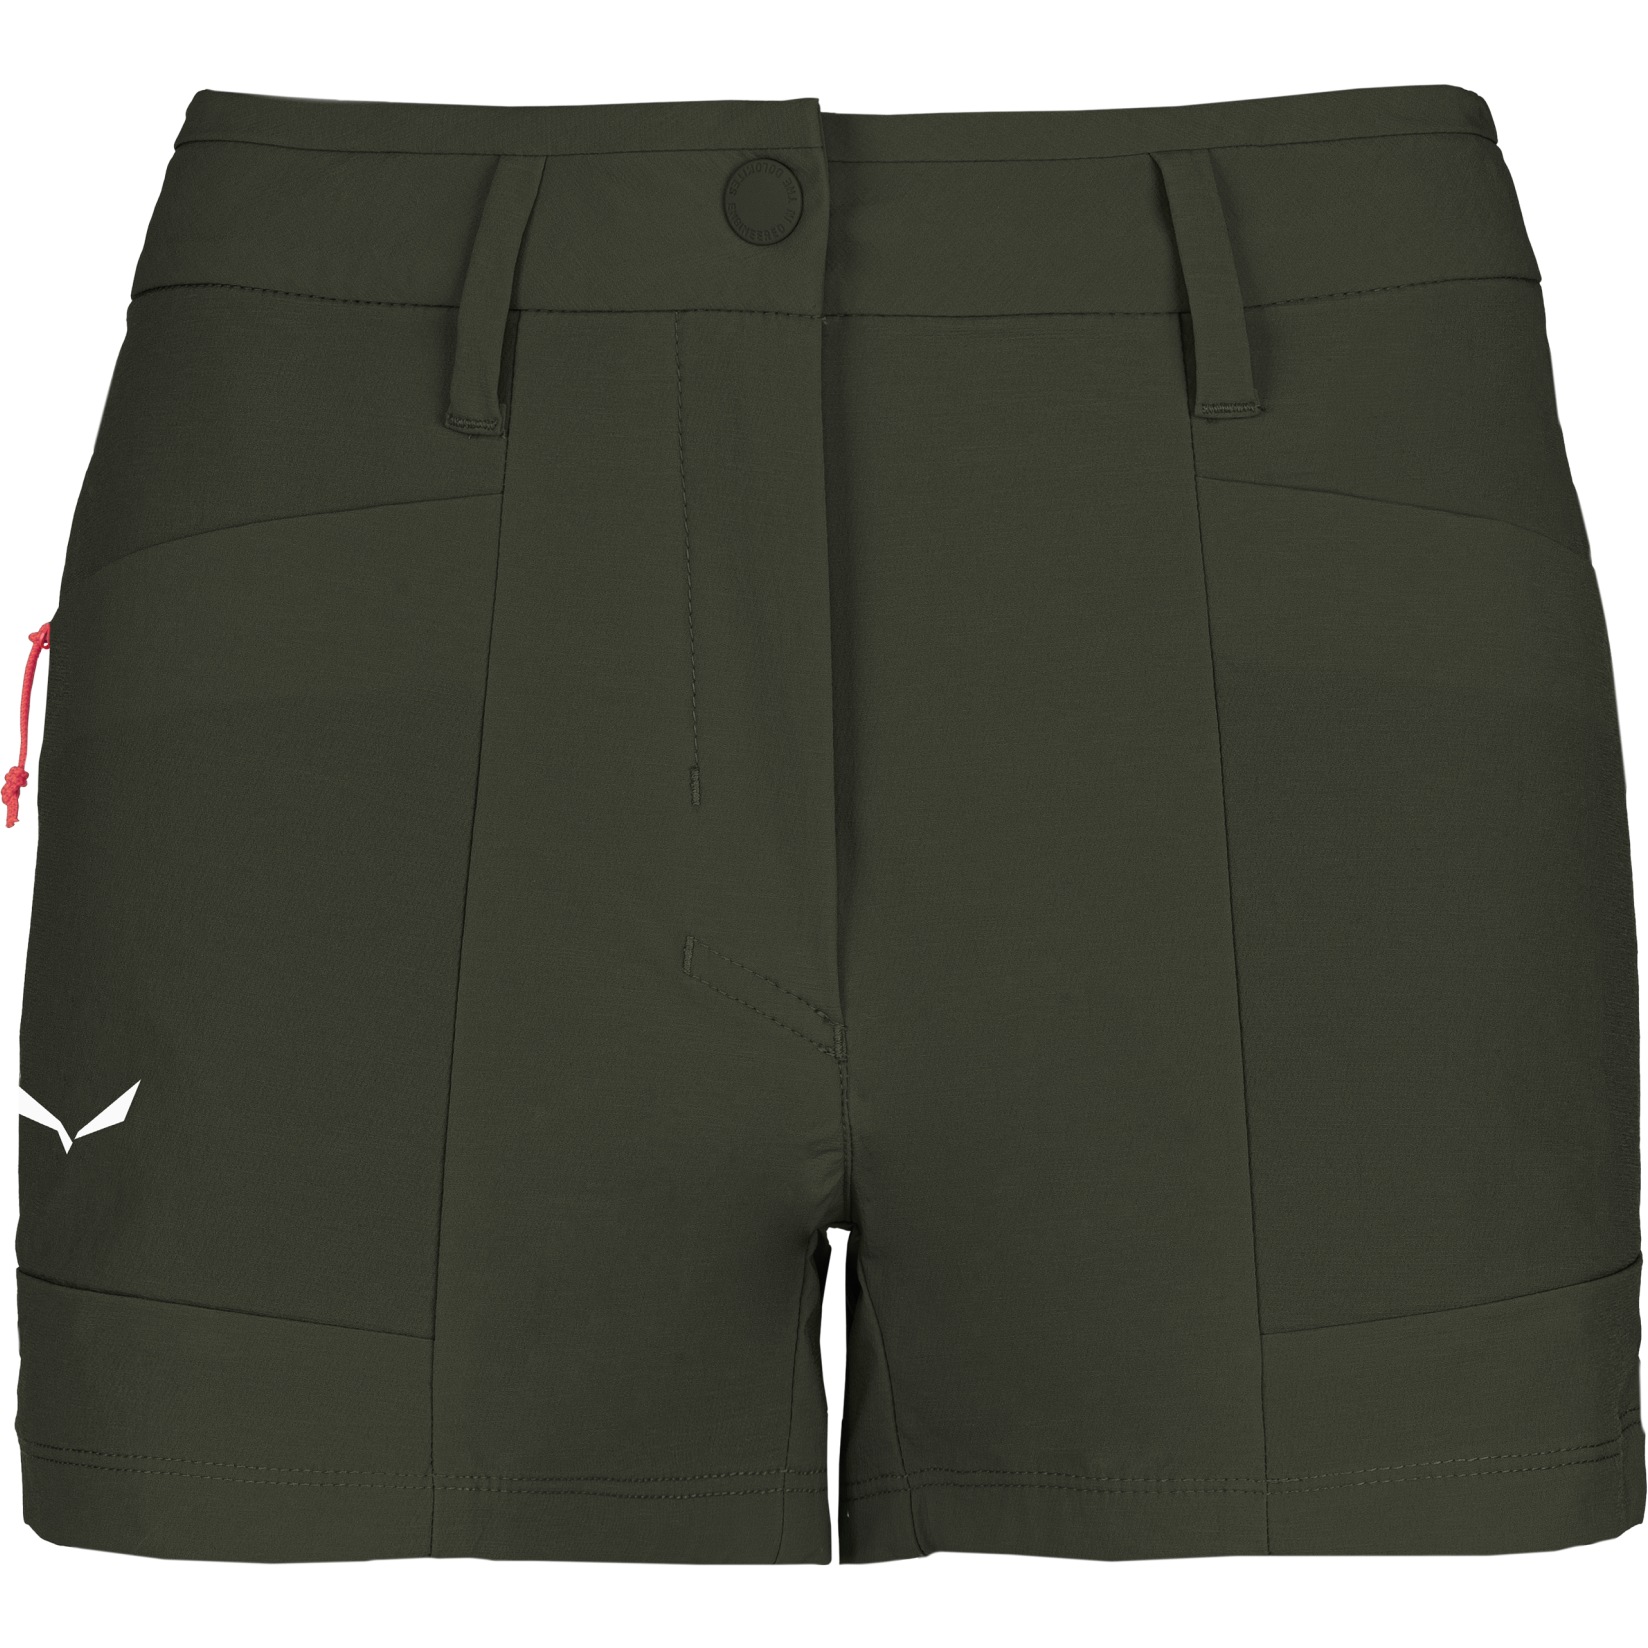 Produktbild von Salewa Puez Durastretch Cargo Shorts Damen - dark olive 5280